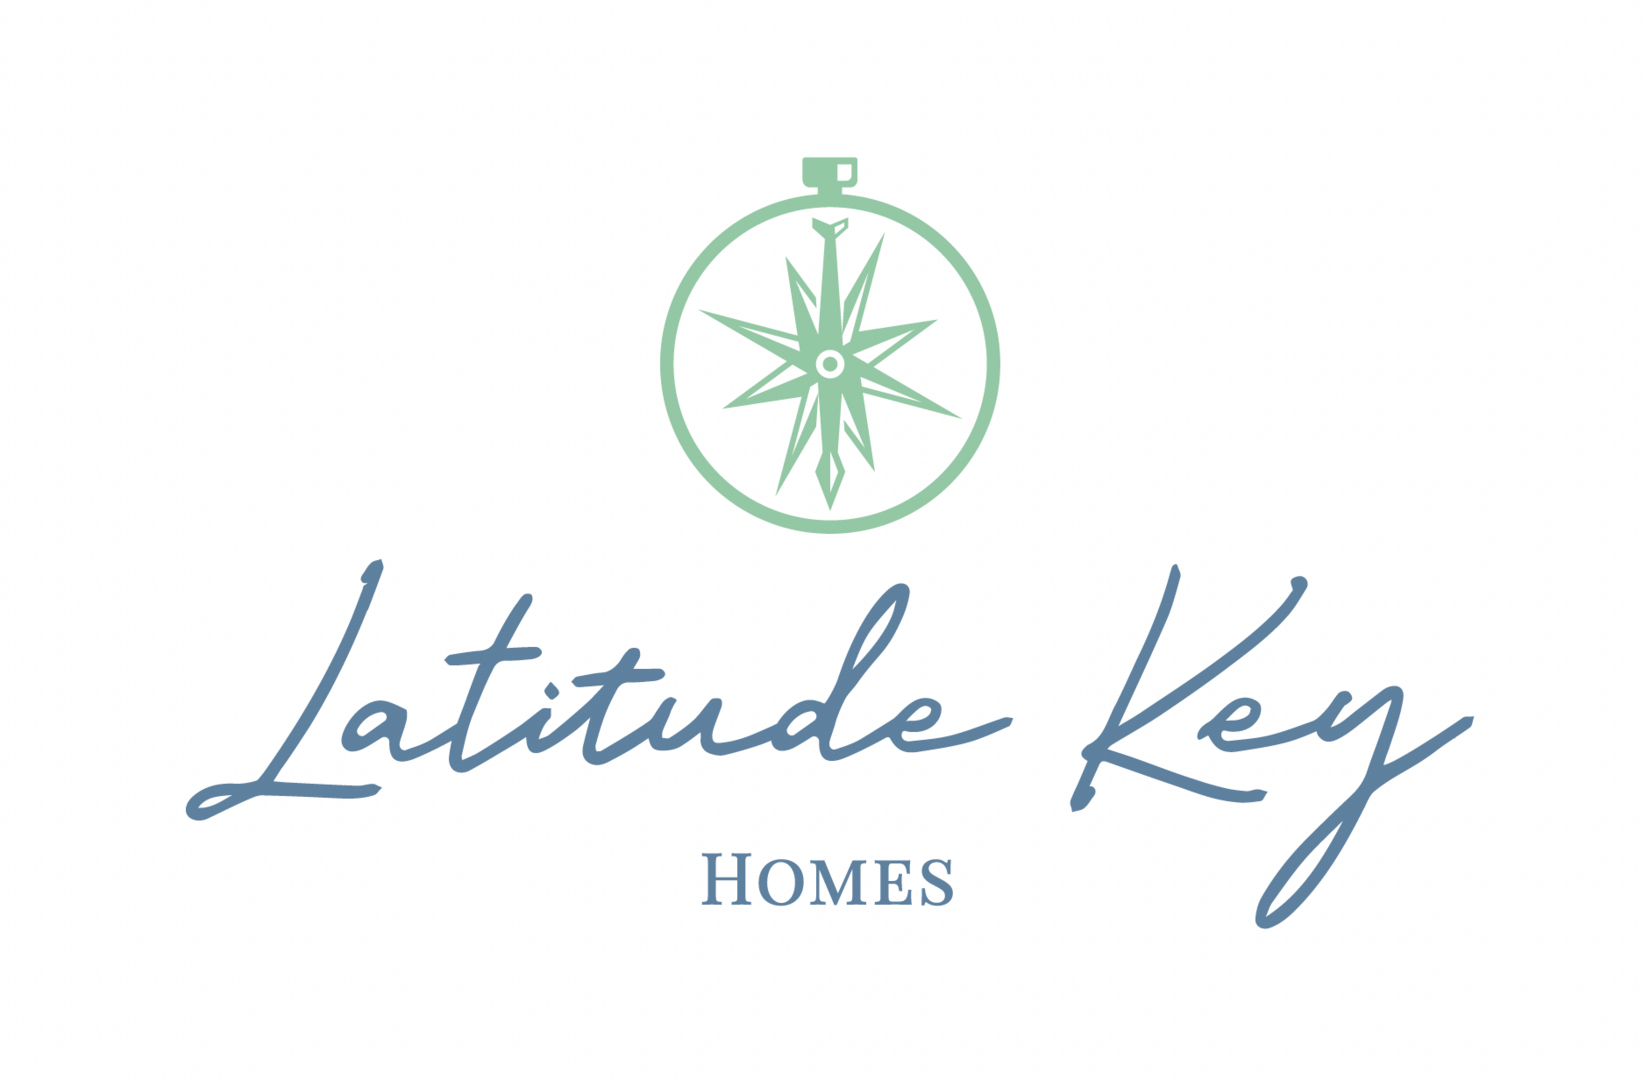 Latitude Key Logo